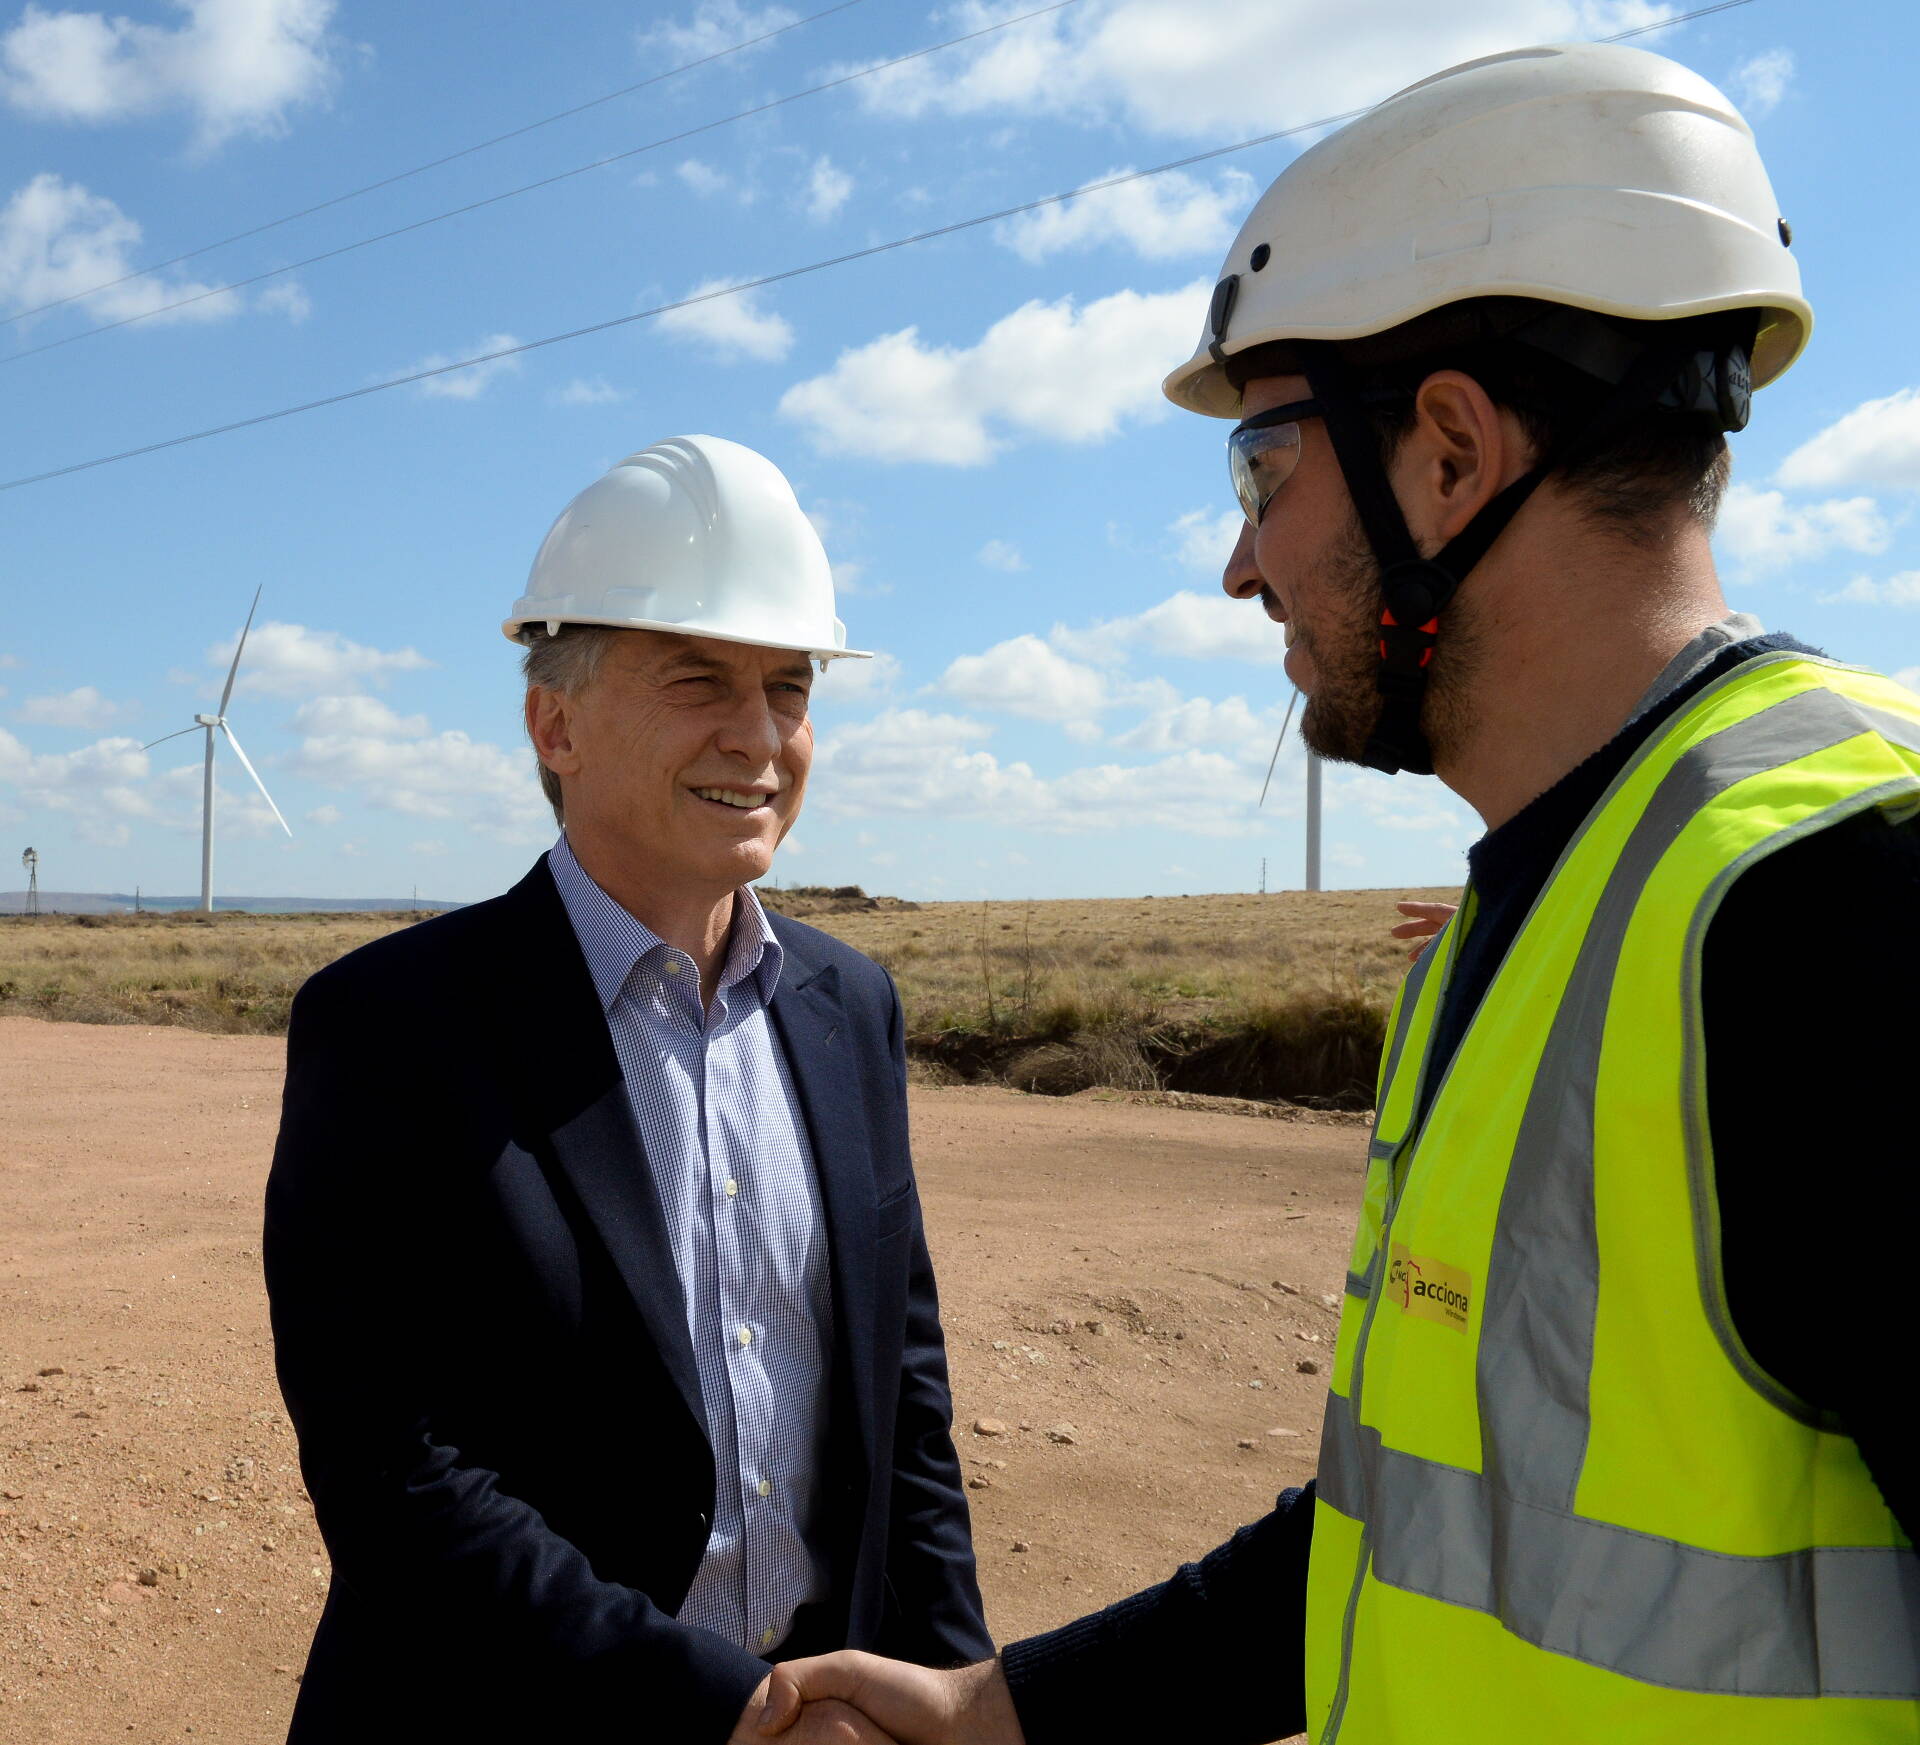 El presidente Macri visitó un parque eólico que generará electricidad para 47.000 hogares